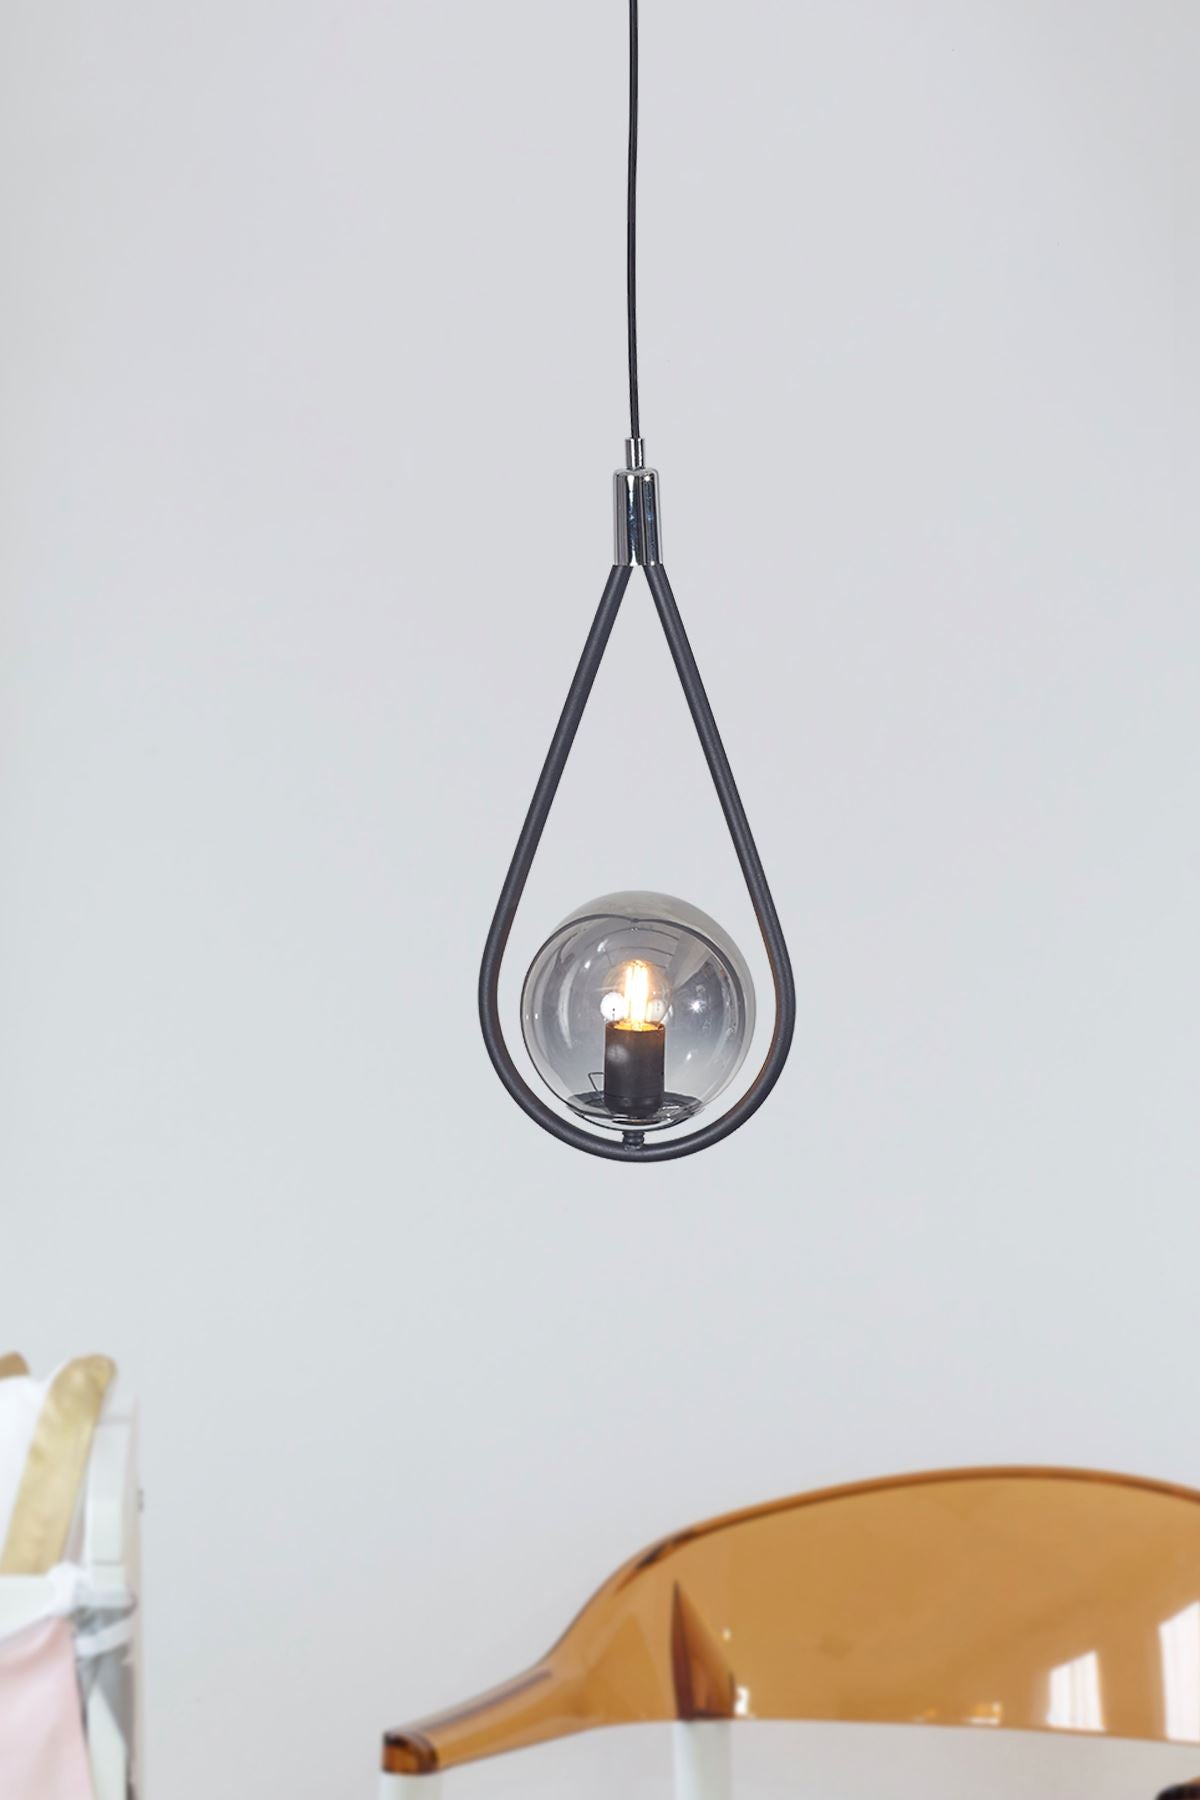 Luzarana Siena zwart met chroom metalen body rookglas design luxe hanglamp